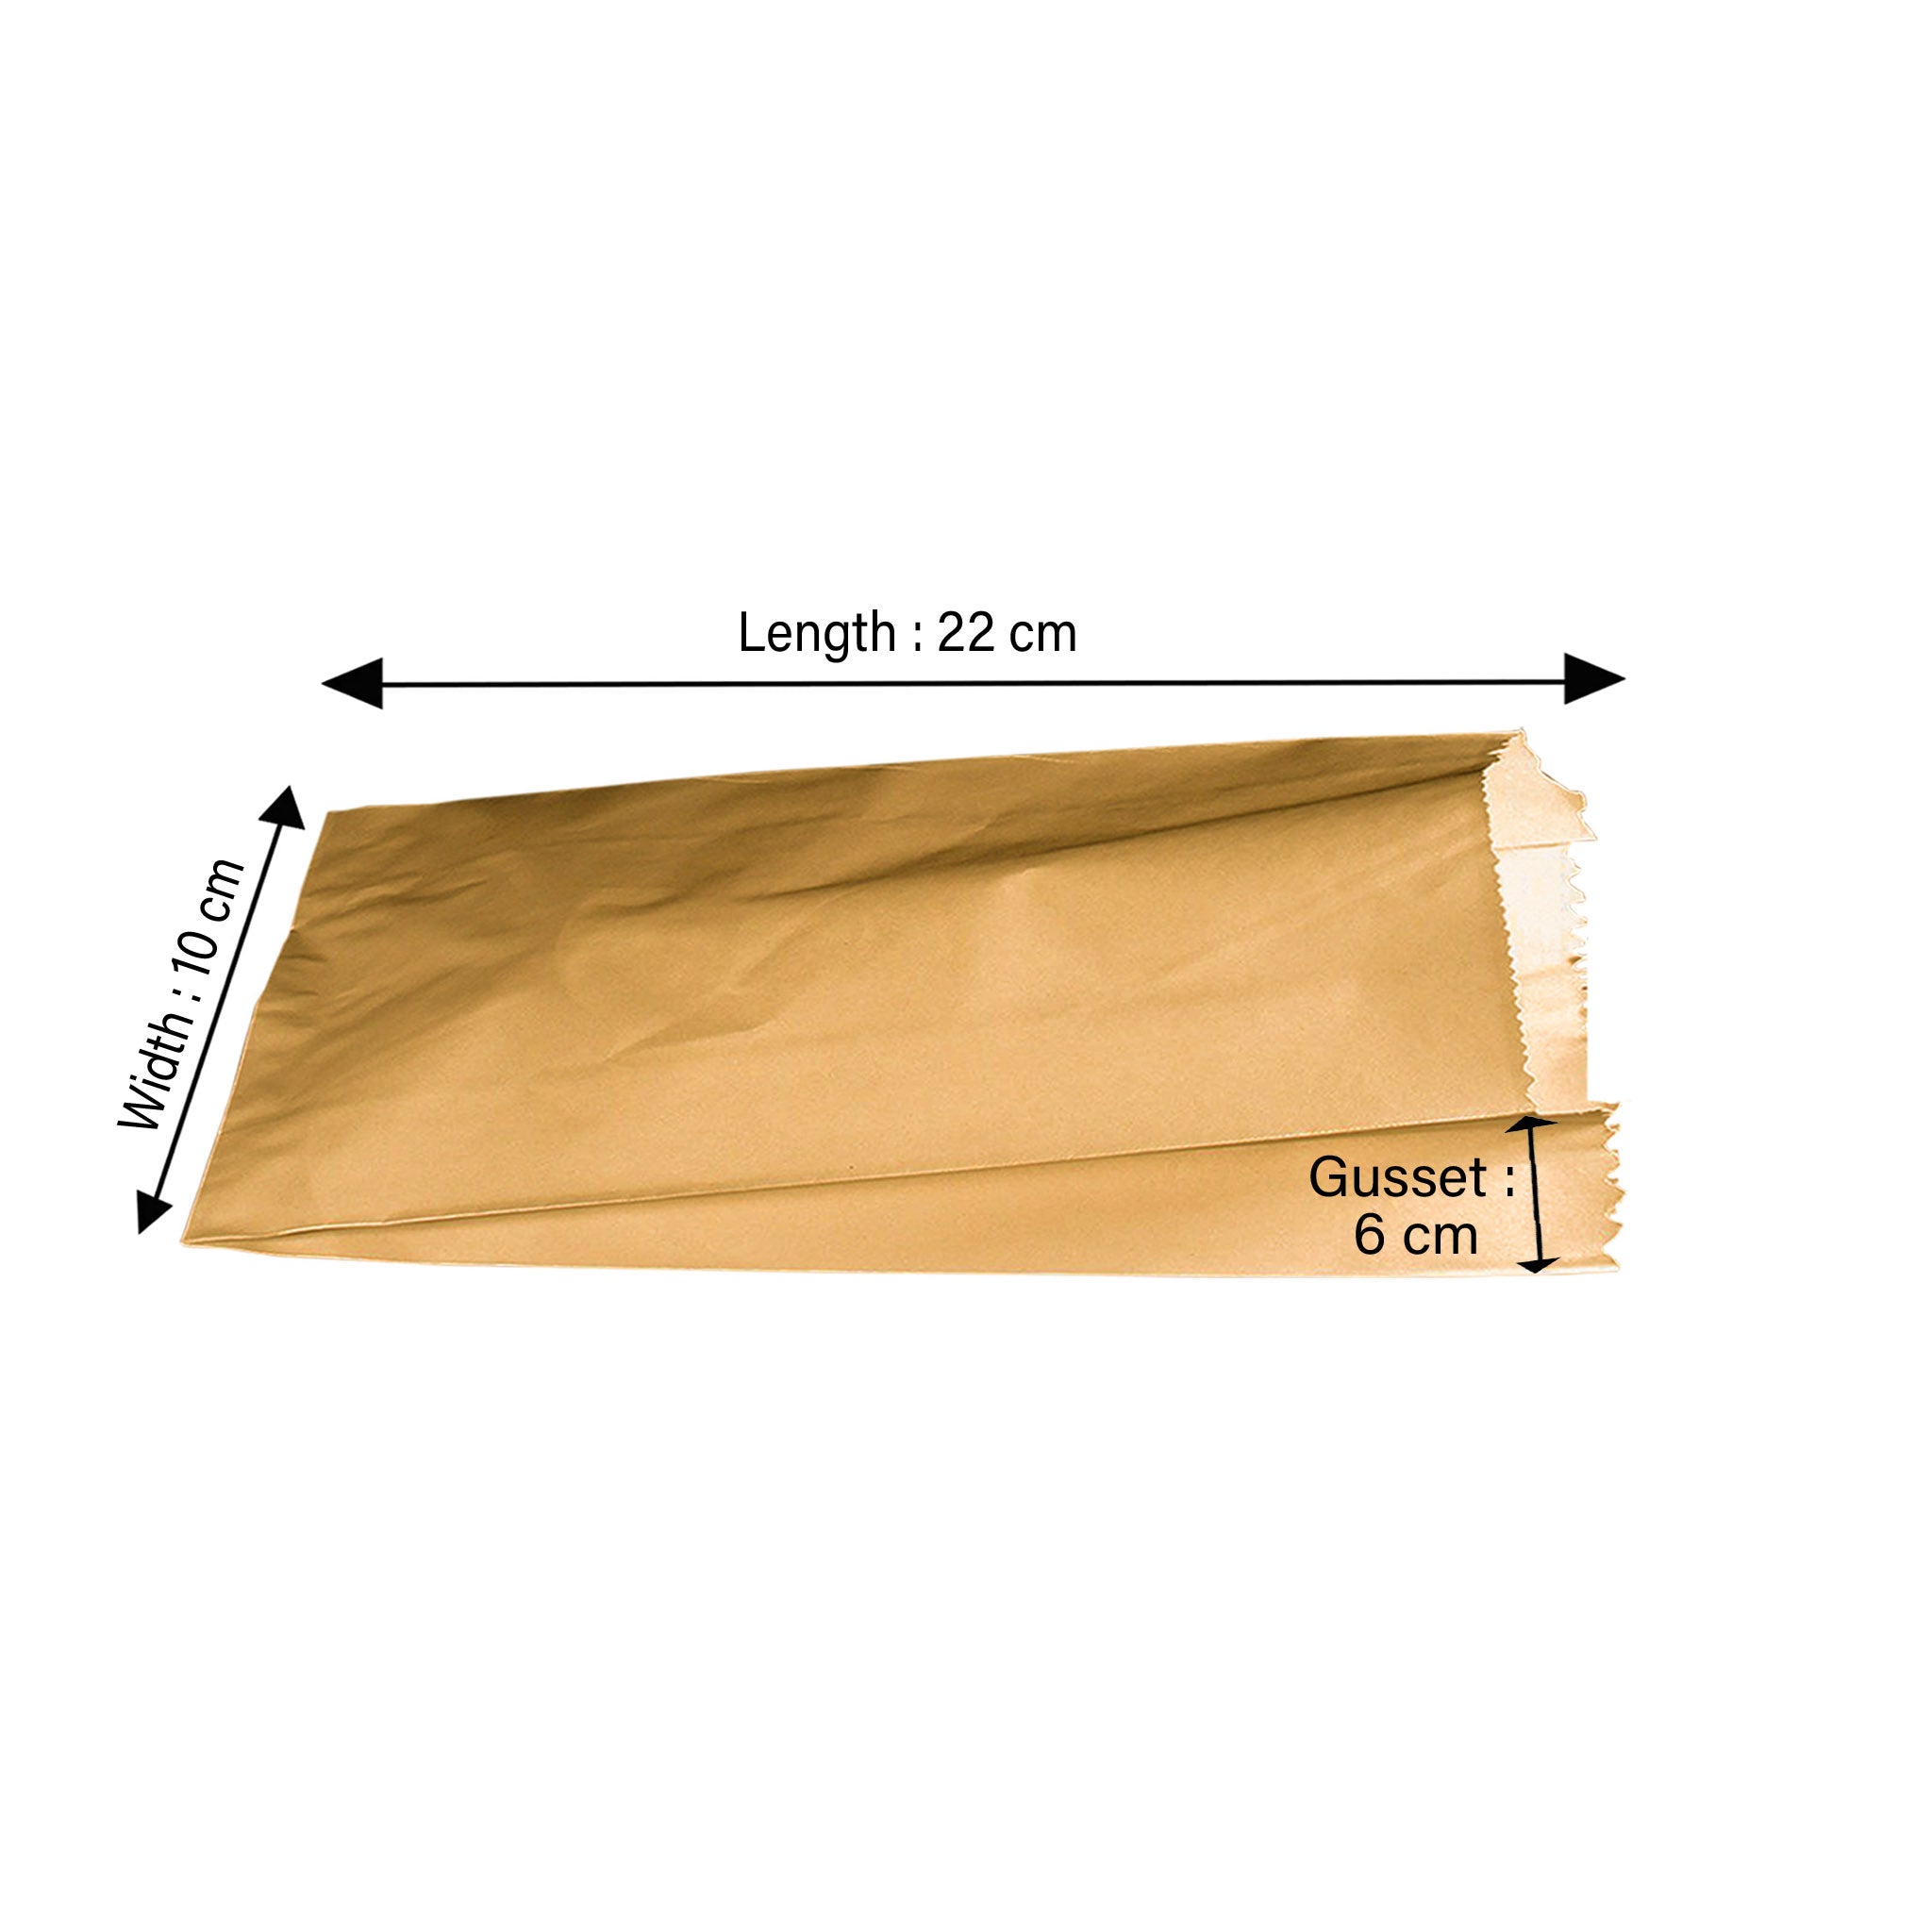 Flat Bottom Bag Brown Ribbed Material 10x6x22 cm - Hotpack Global